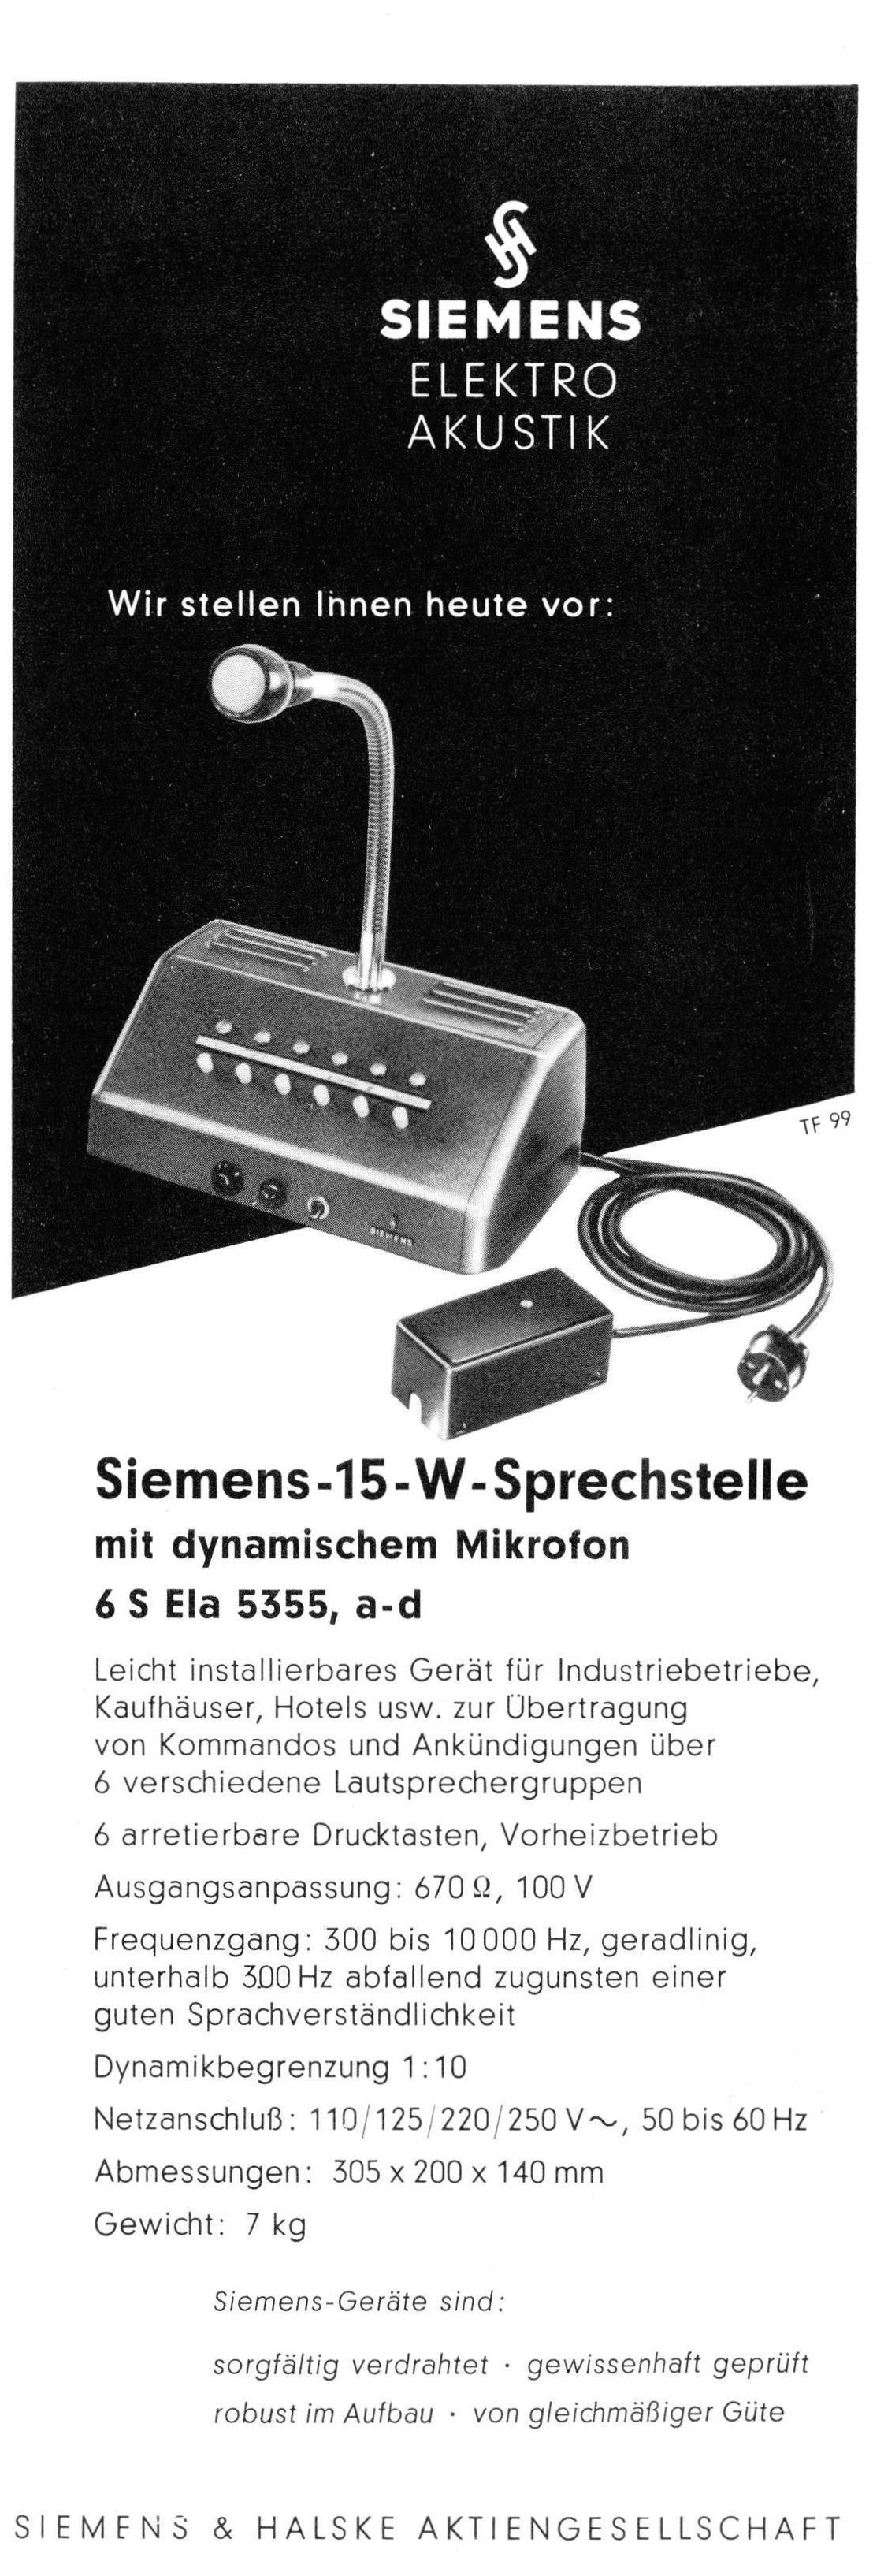 Siemens 1957 01.jpg